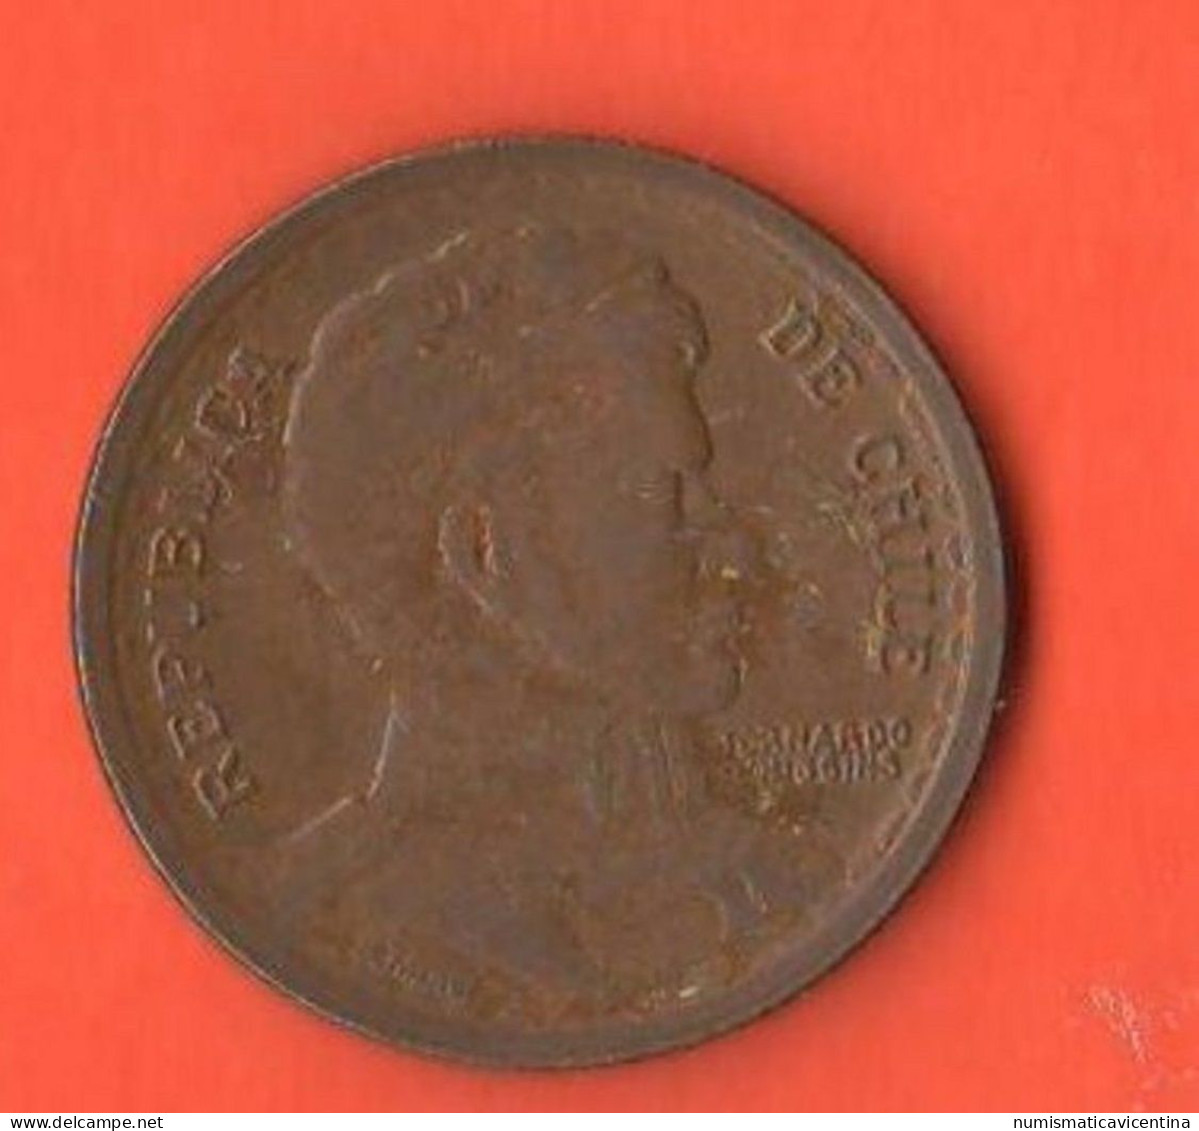 Cile Chile 1 Peso 1949 General Bernardo O'Higgens - Chile